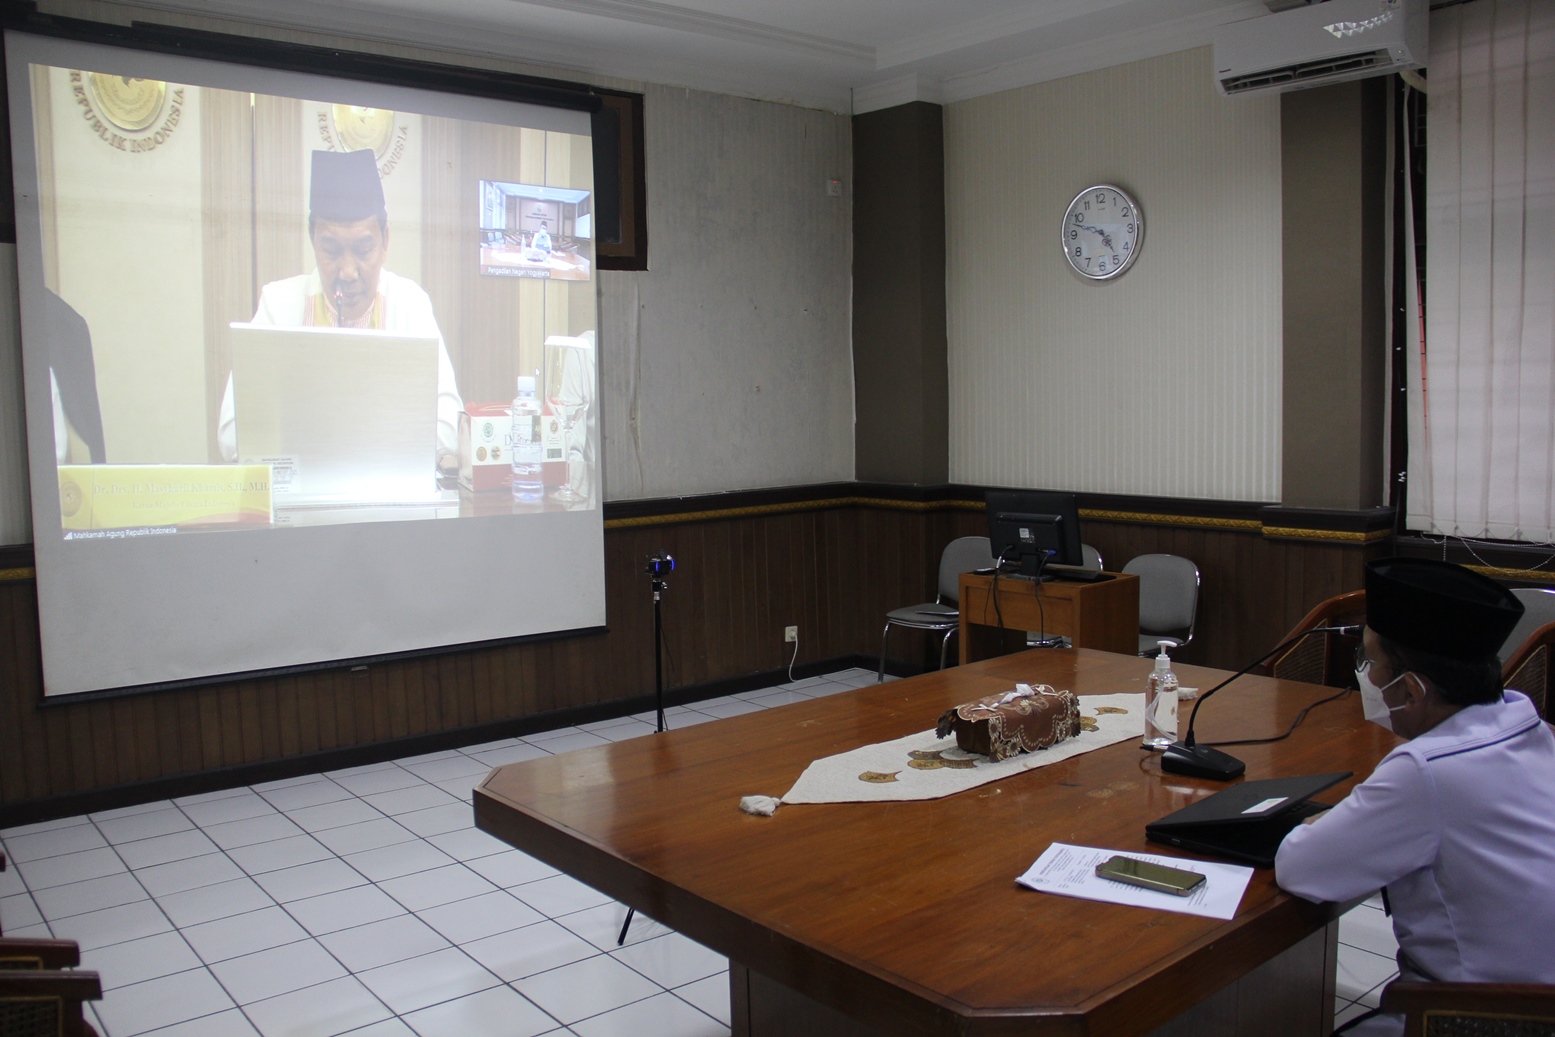 Ketua Pengadilan Negeri Yogyakarta Mengikuti Peringatan Nuzulul Qur'an 1443 H / 2022 M